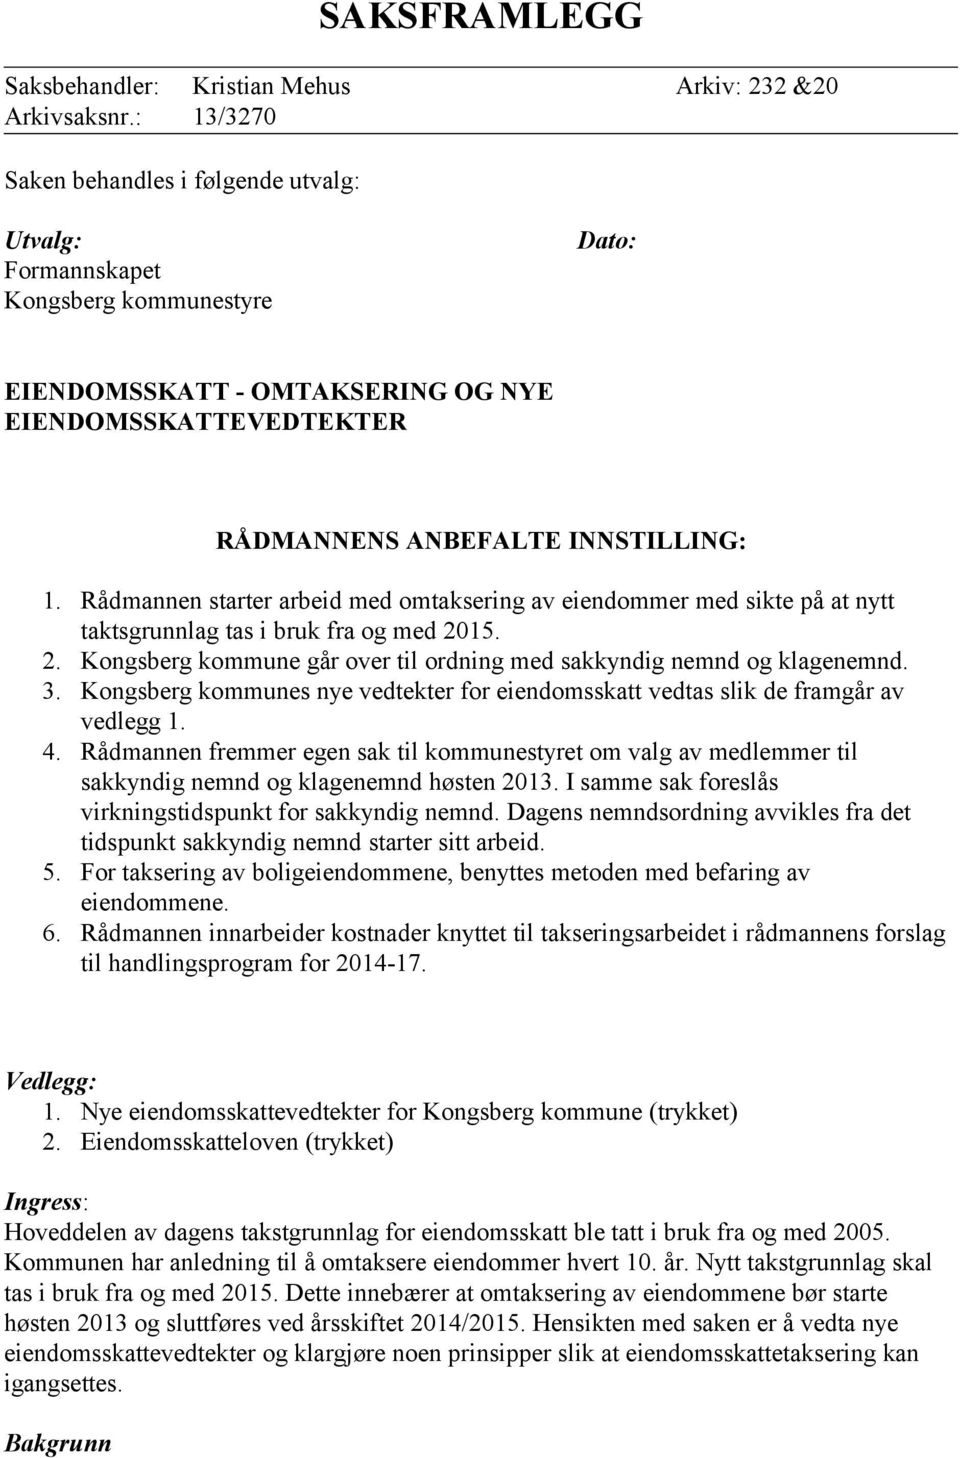 Rådmannen starter arbeid med omtaksering av eiendommer med sikte på at nytt taktsgrunnlag tas i bruk fra og med 2015. 2. Kongsberg kommune går over til ordning med sakkyndig nemnd og klagenemnd. 3.